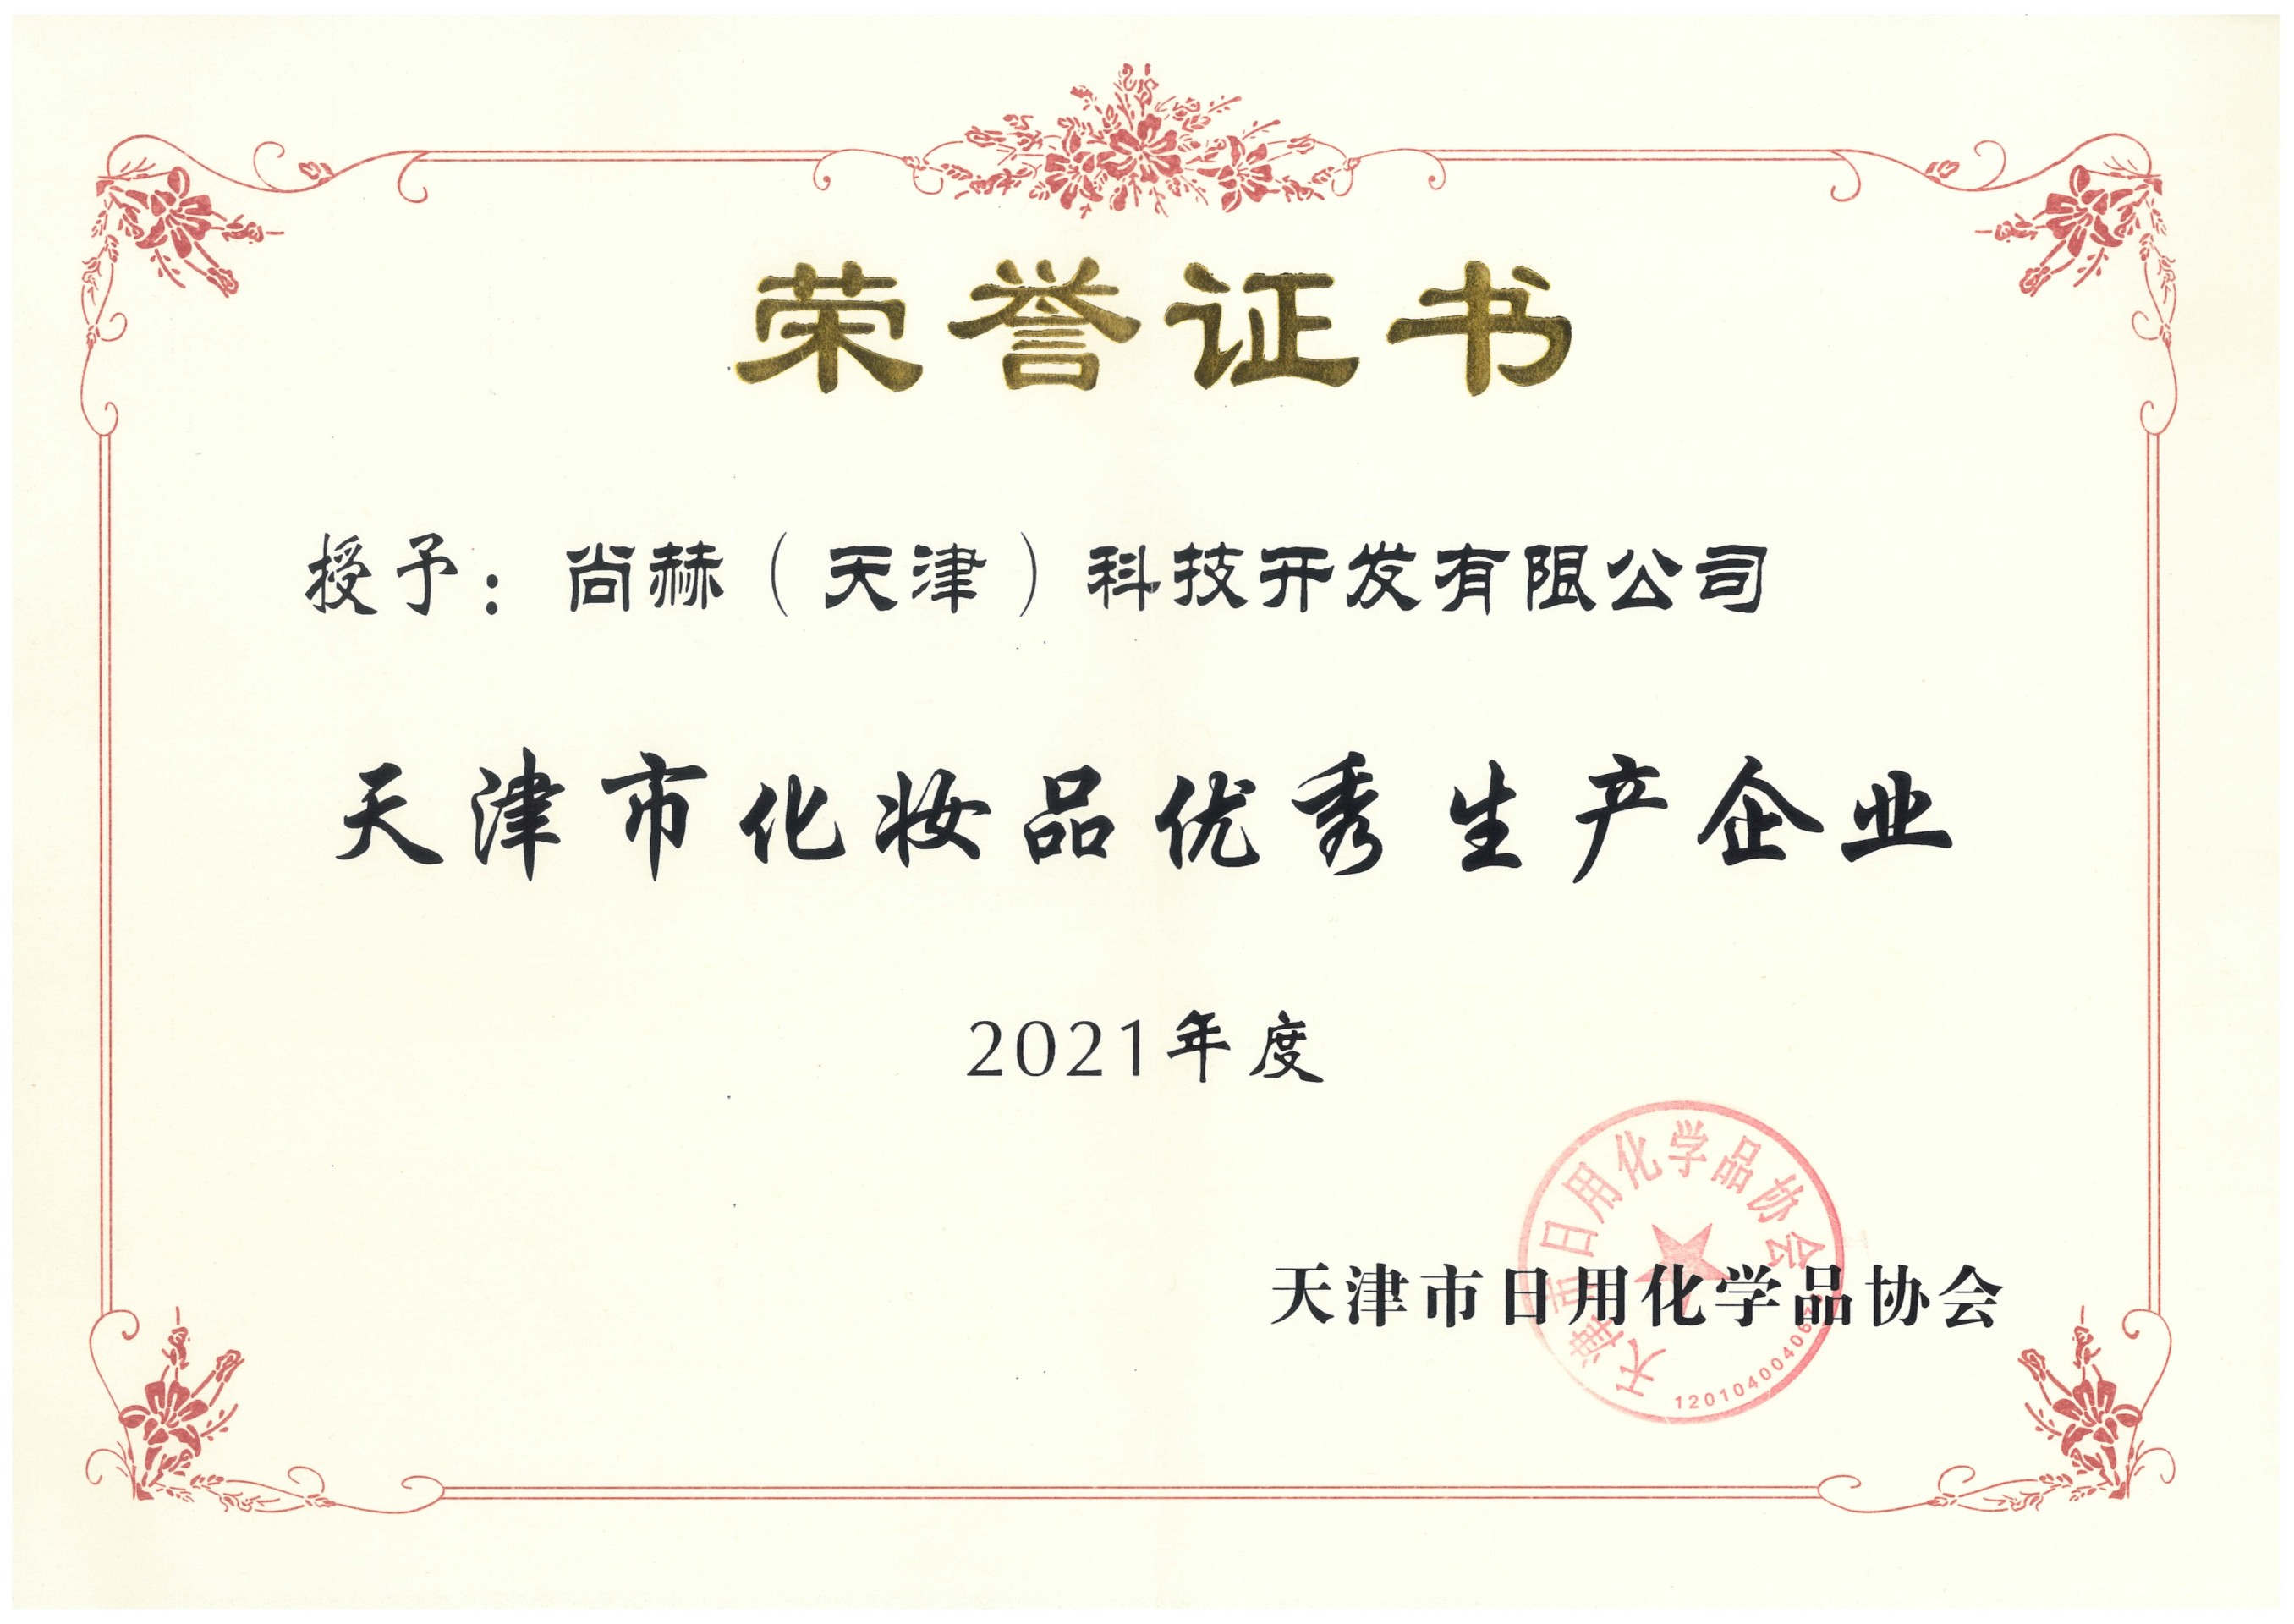 2022年3月-尊龙体育国际(中国)科技有限公司荣获-2021年度天津市化妆品优秀生产企业